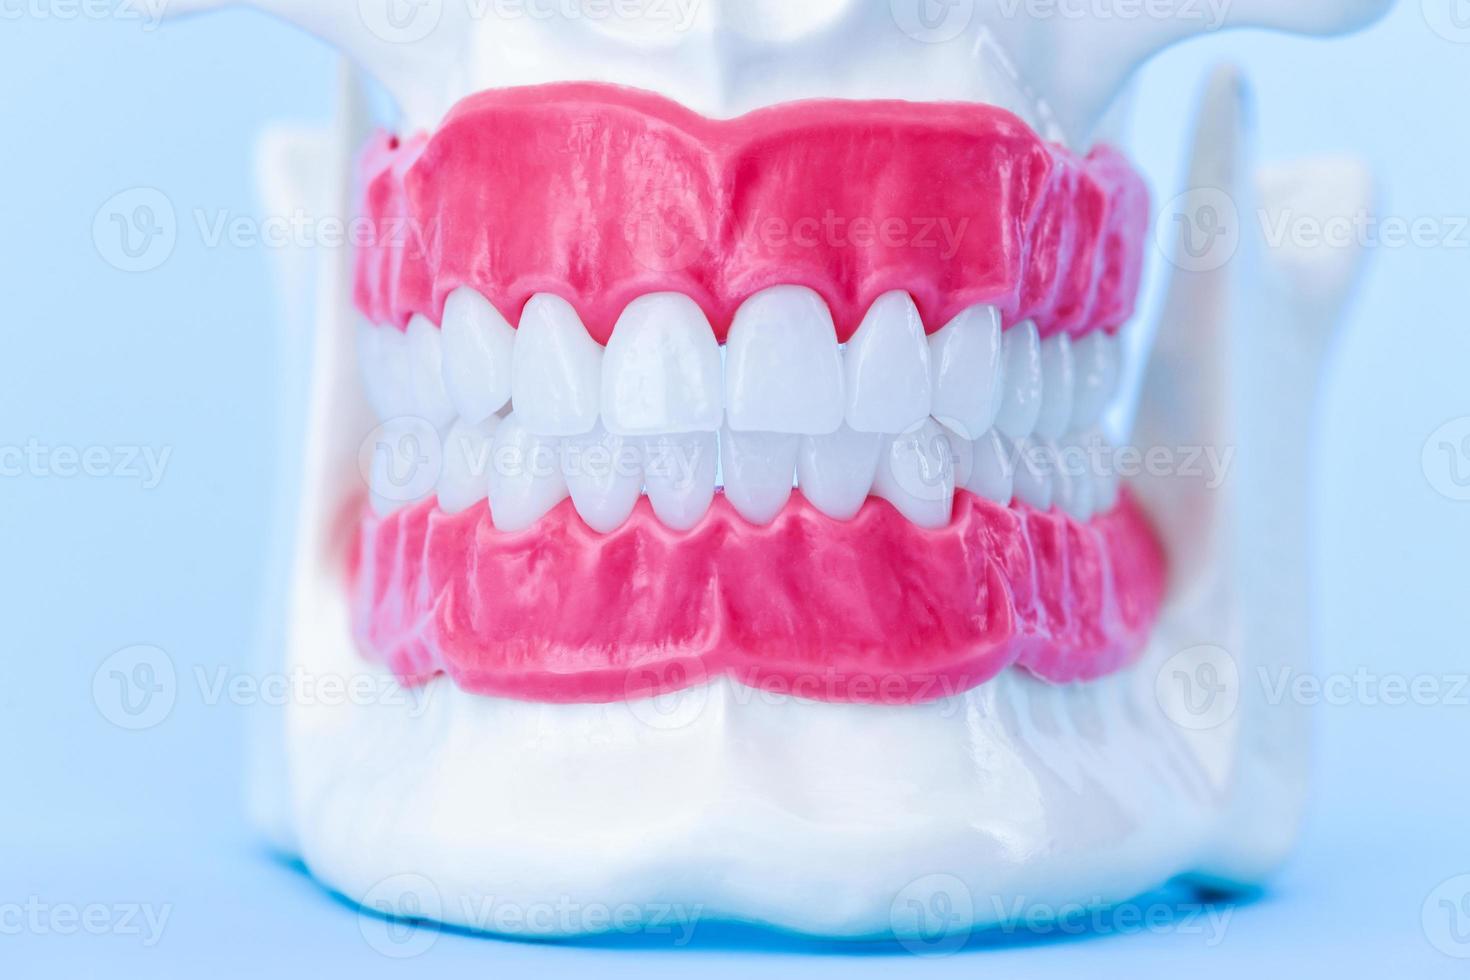 umano mascella con denti e gengive anatomia modello foto